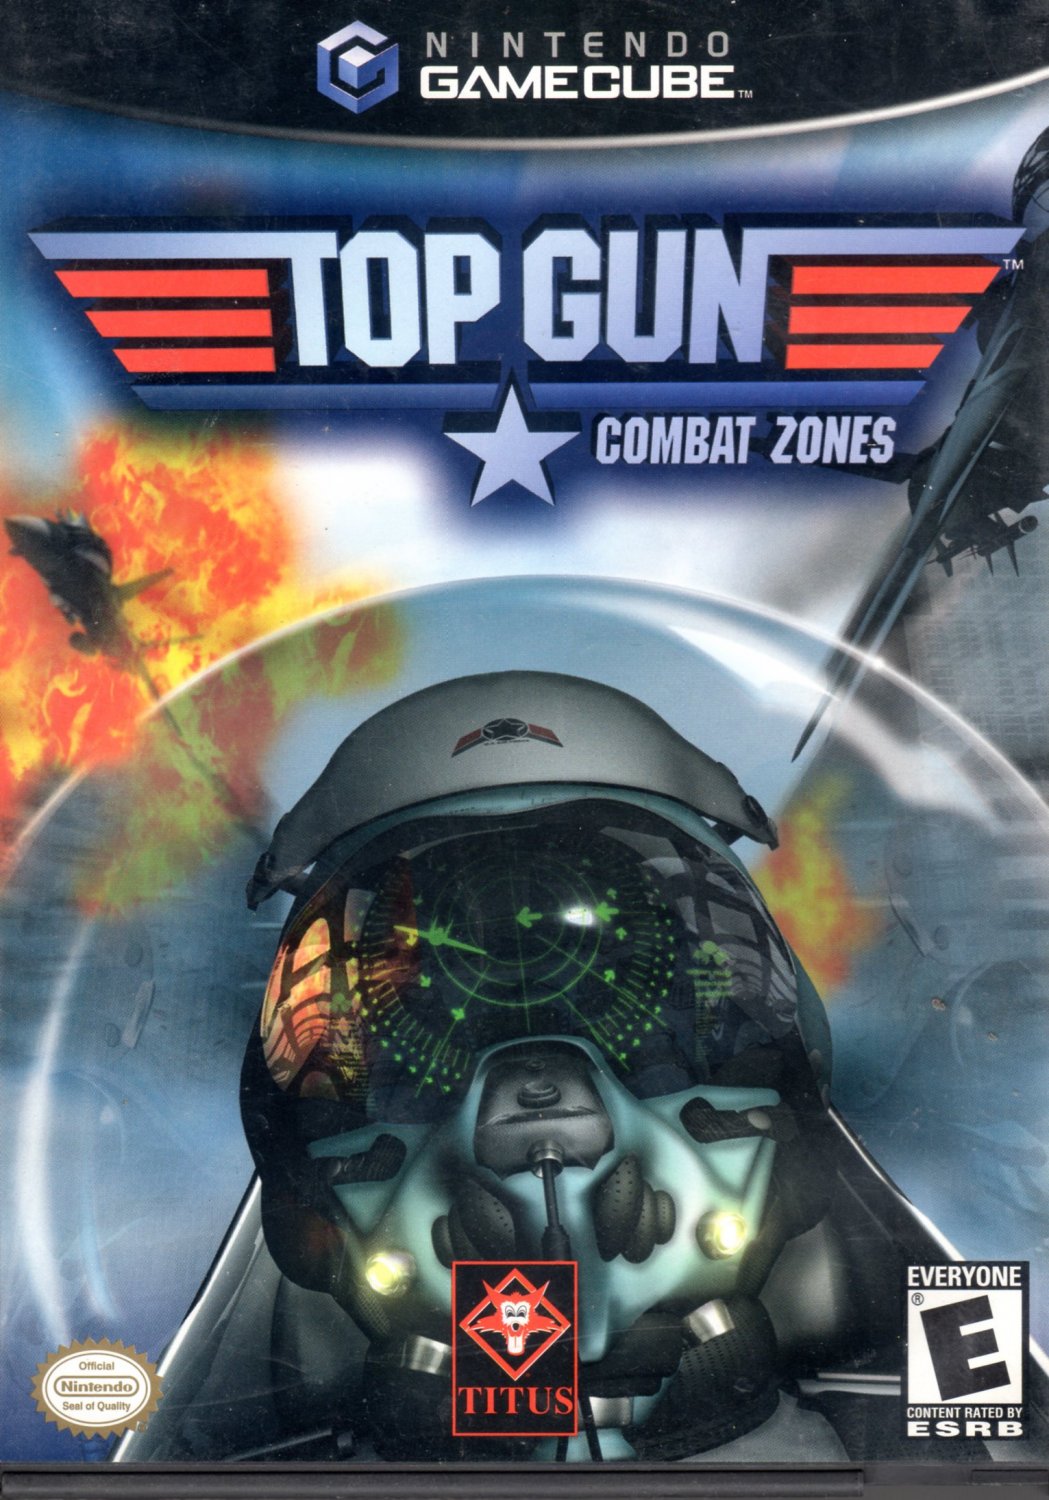 Топ ган игра. Top Gun игра. Компьютерная игра топ Ган. Top Gun - Combat Zones GBA. Top Gunner игра.